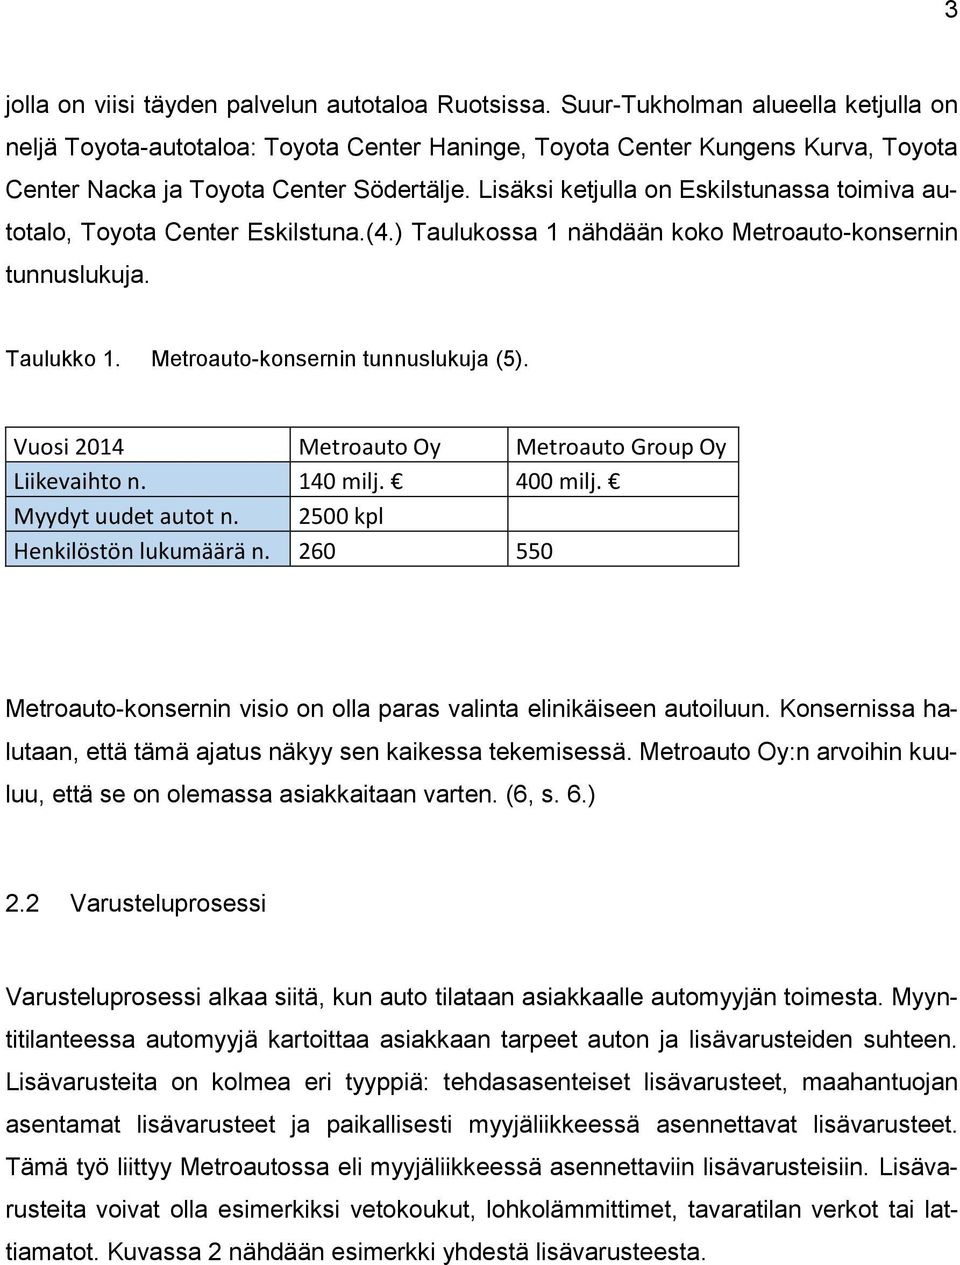 Lisäksi ketjulla on Eskilstunassa toimiva autotalo, Toyota Center Eskilstuna.(4.) Taulukossa 1 nähdään koko Metroauto-konsernin tunnuslukuja. Taulukko 1. Metroauto-konsernin tunnuslukuja (5).